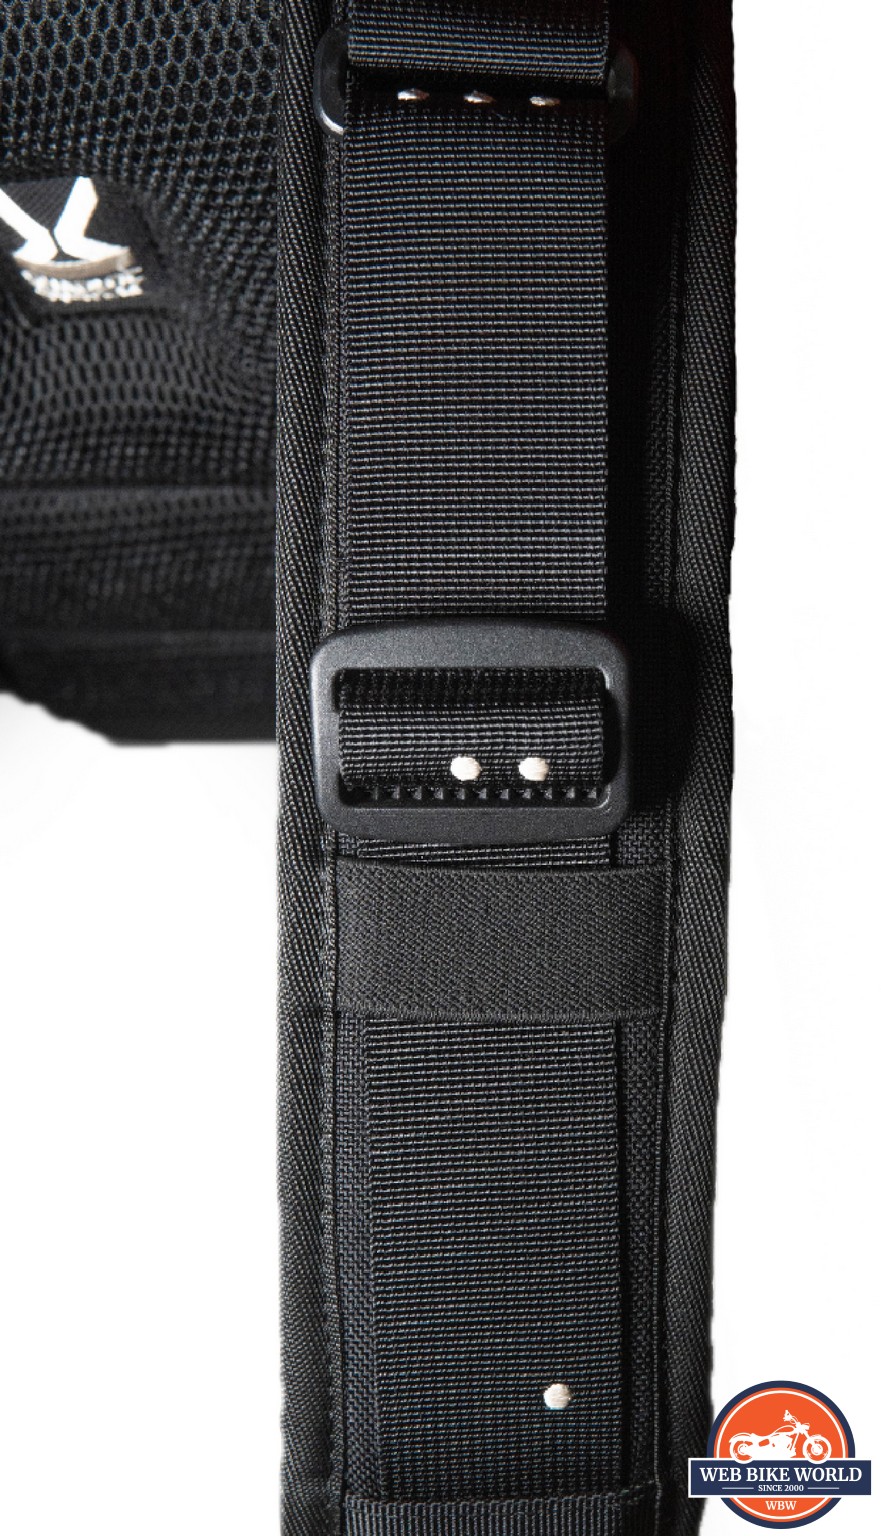 Closeup of the adjustable shoulder straps